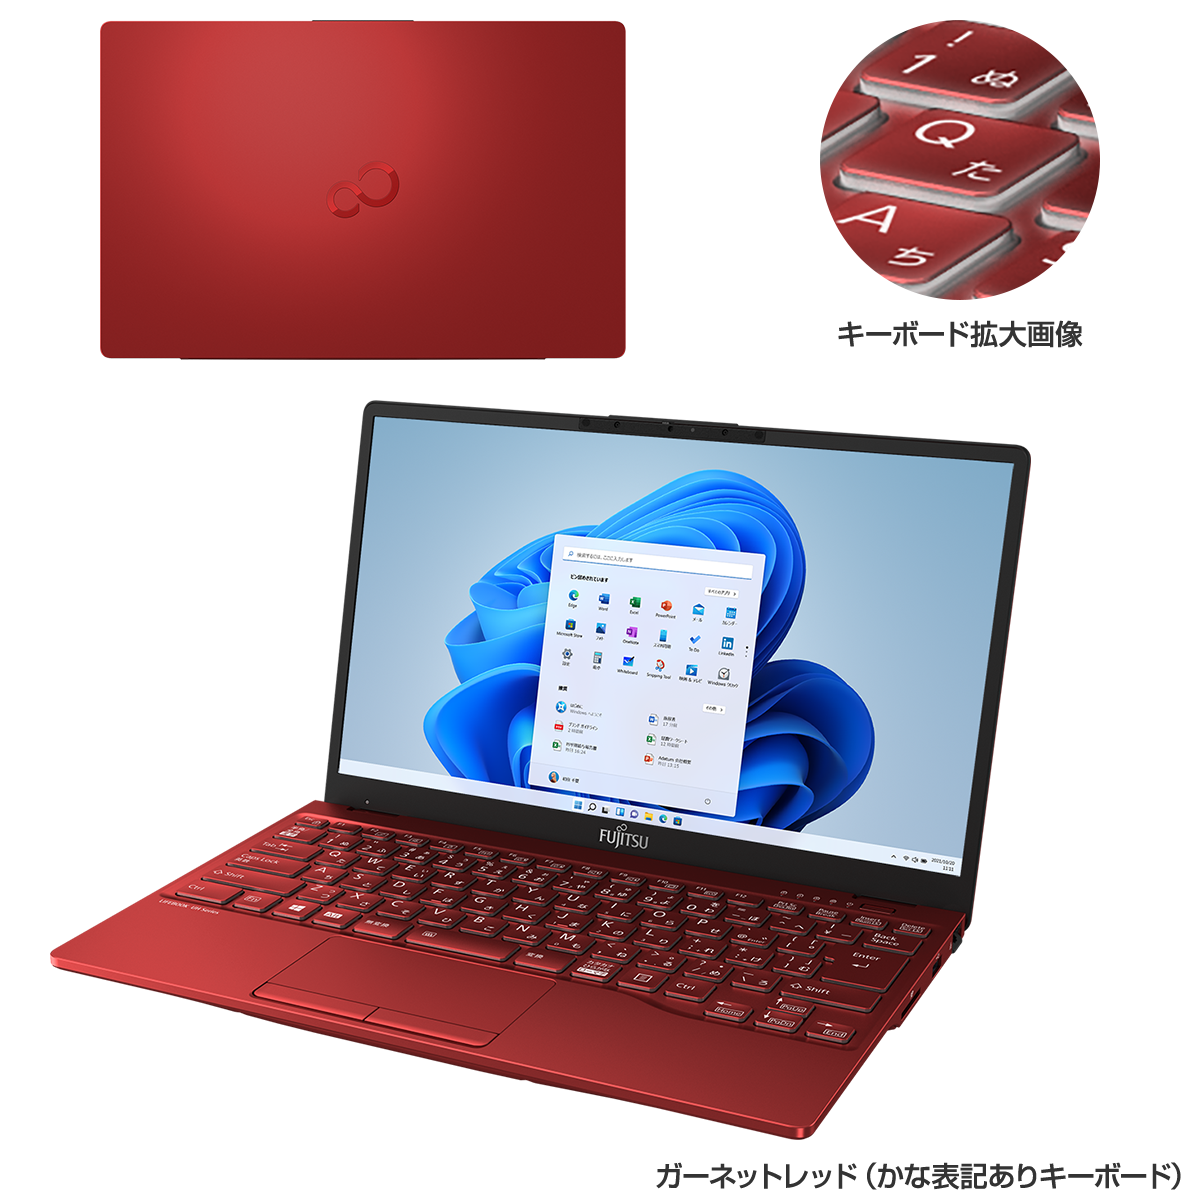 【中野】FMVU75B3 富士通 ノートパソコン 赤 RED ノートPC